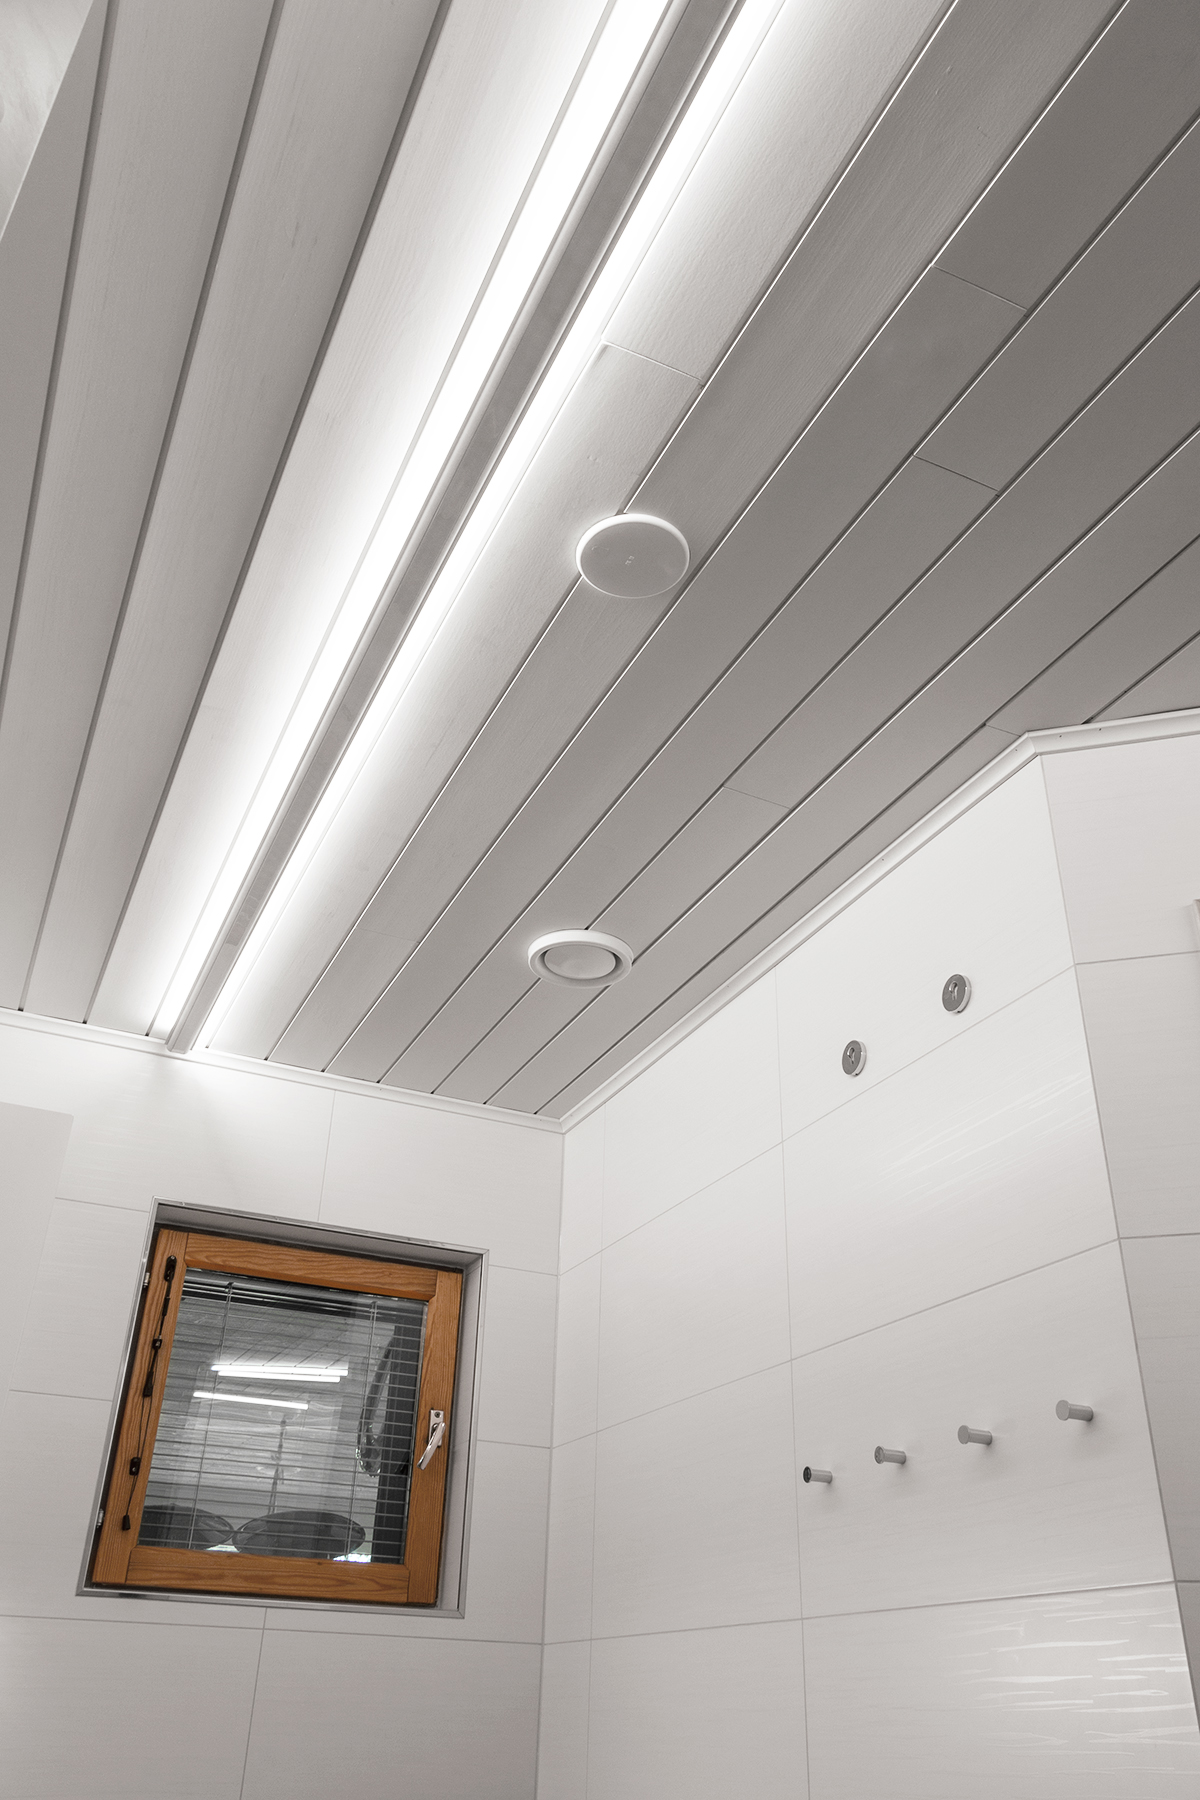 Led-profiler i taket ger indirekt ljus till badrummet